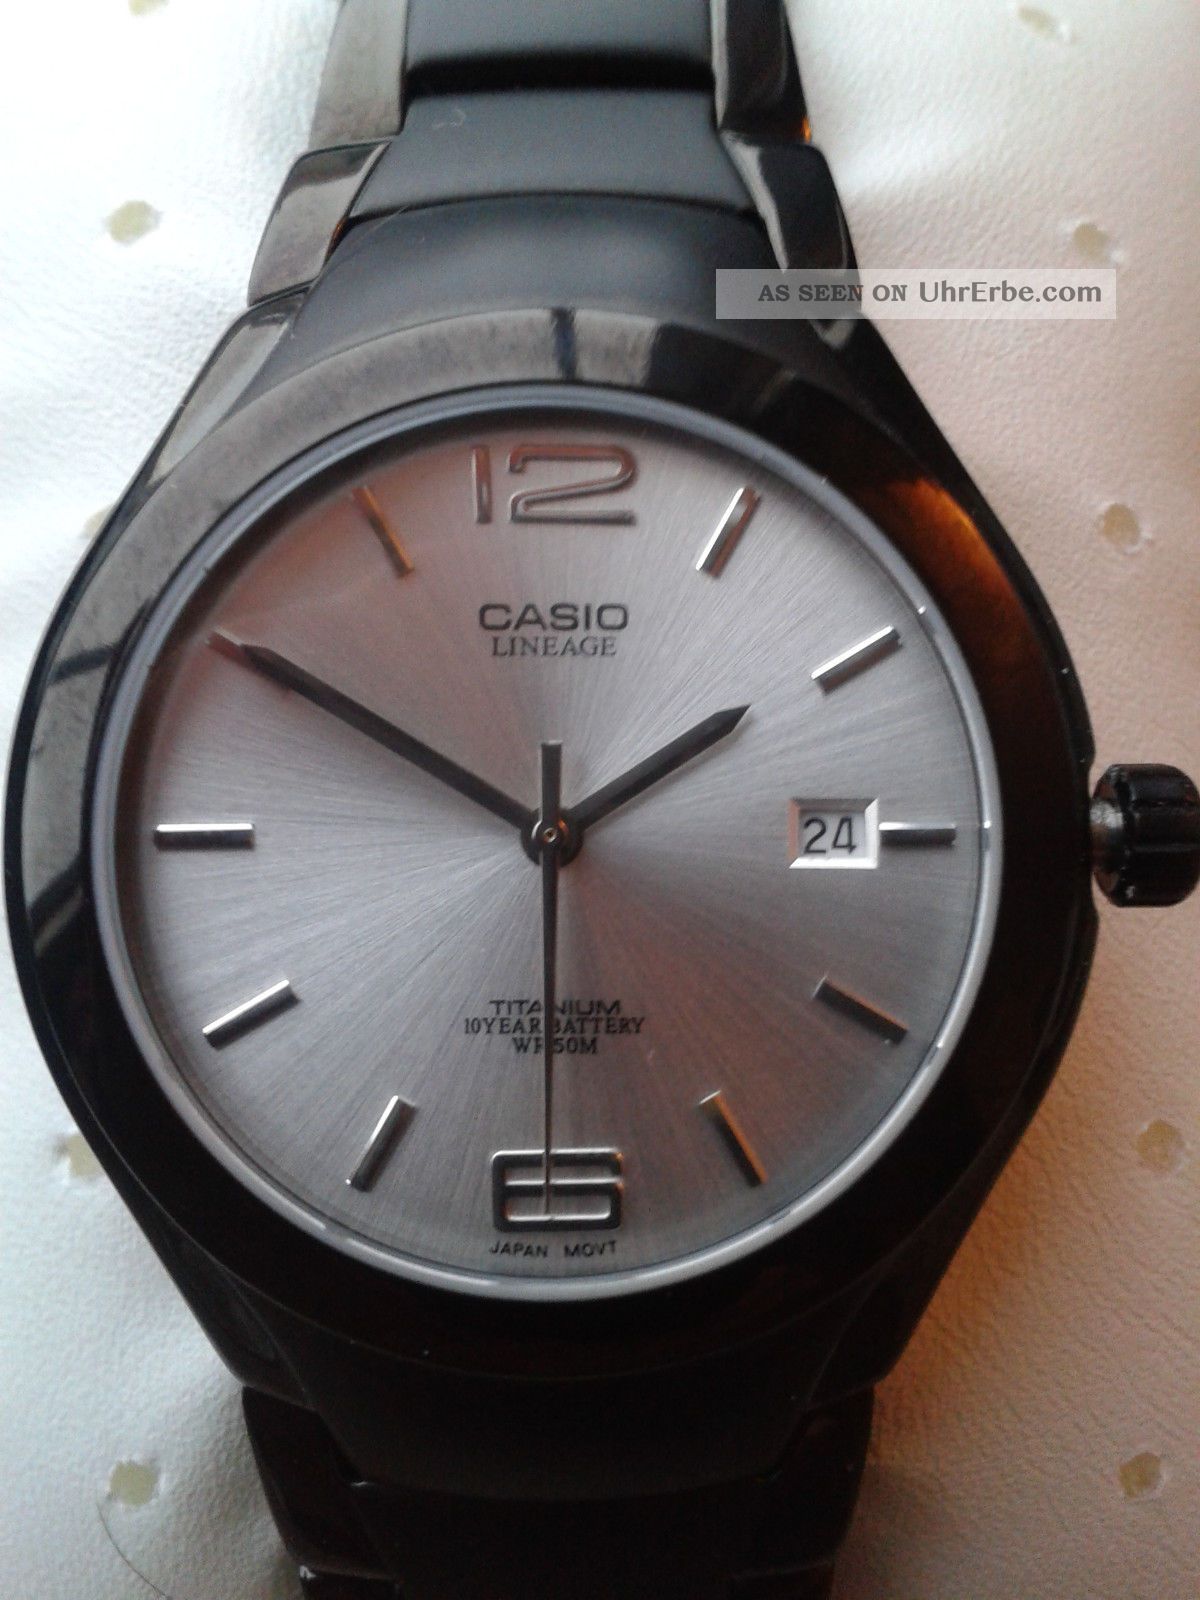 Casio Herrenarmbanduhr - Lineage Titan,  Lin - 169bk - 7av,  Ungetragen Armbanduhren Bild